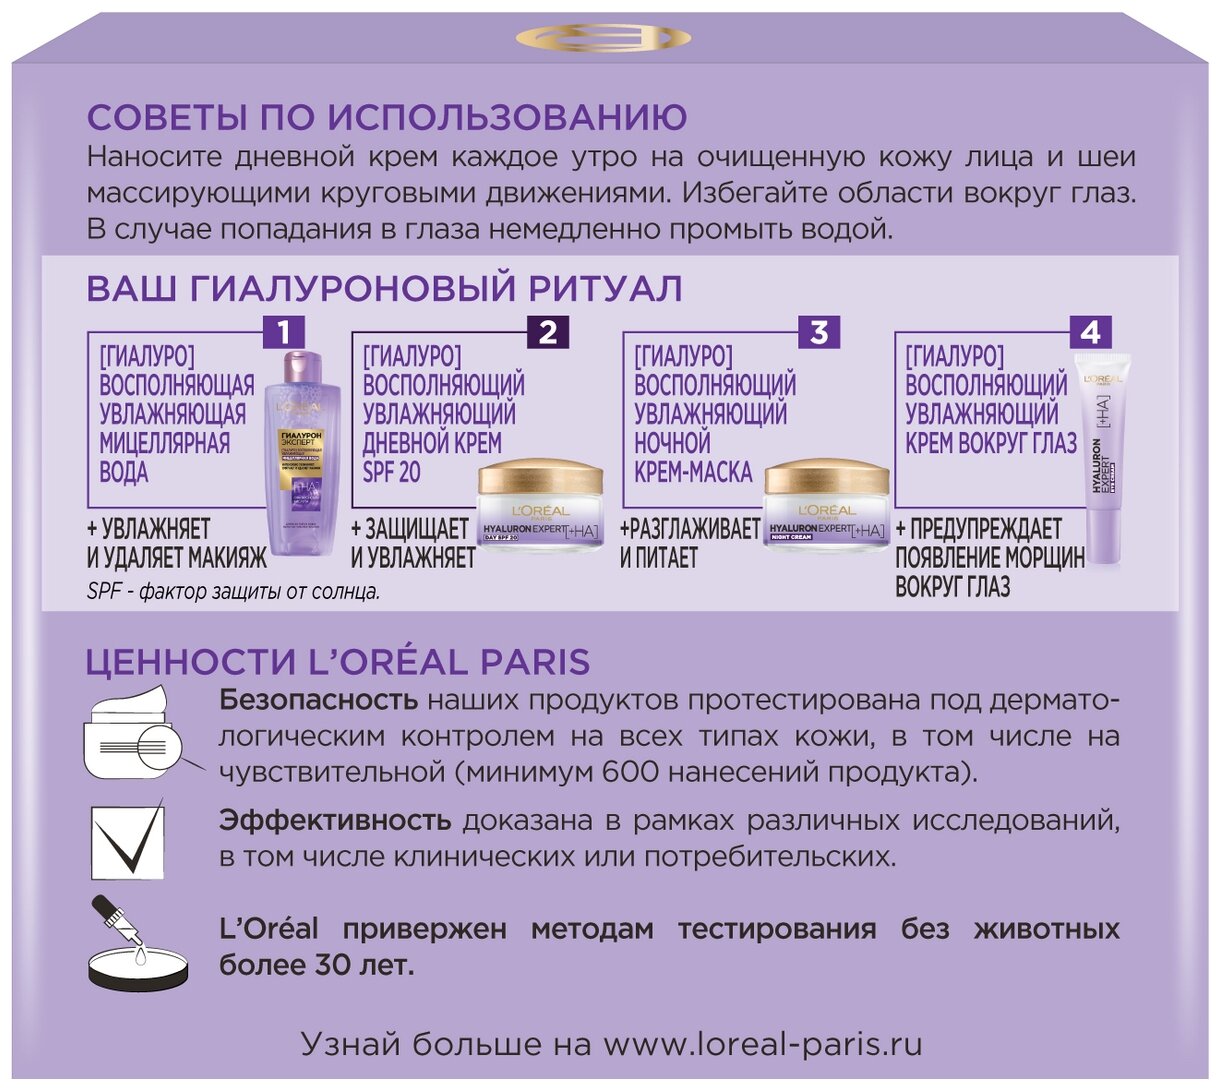 Дневной крем для кожи лица L’Oréal Paris Гиалурон эксперт SPF20, 50 мл L'OREAL - фото №12